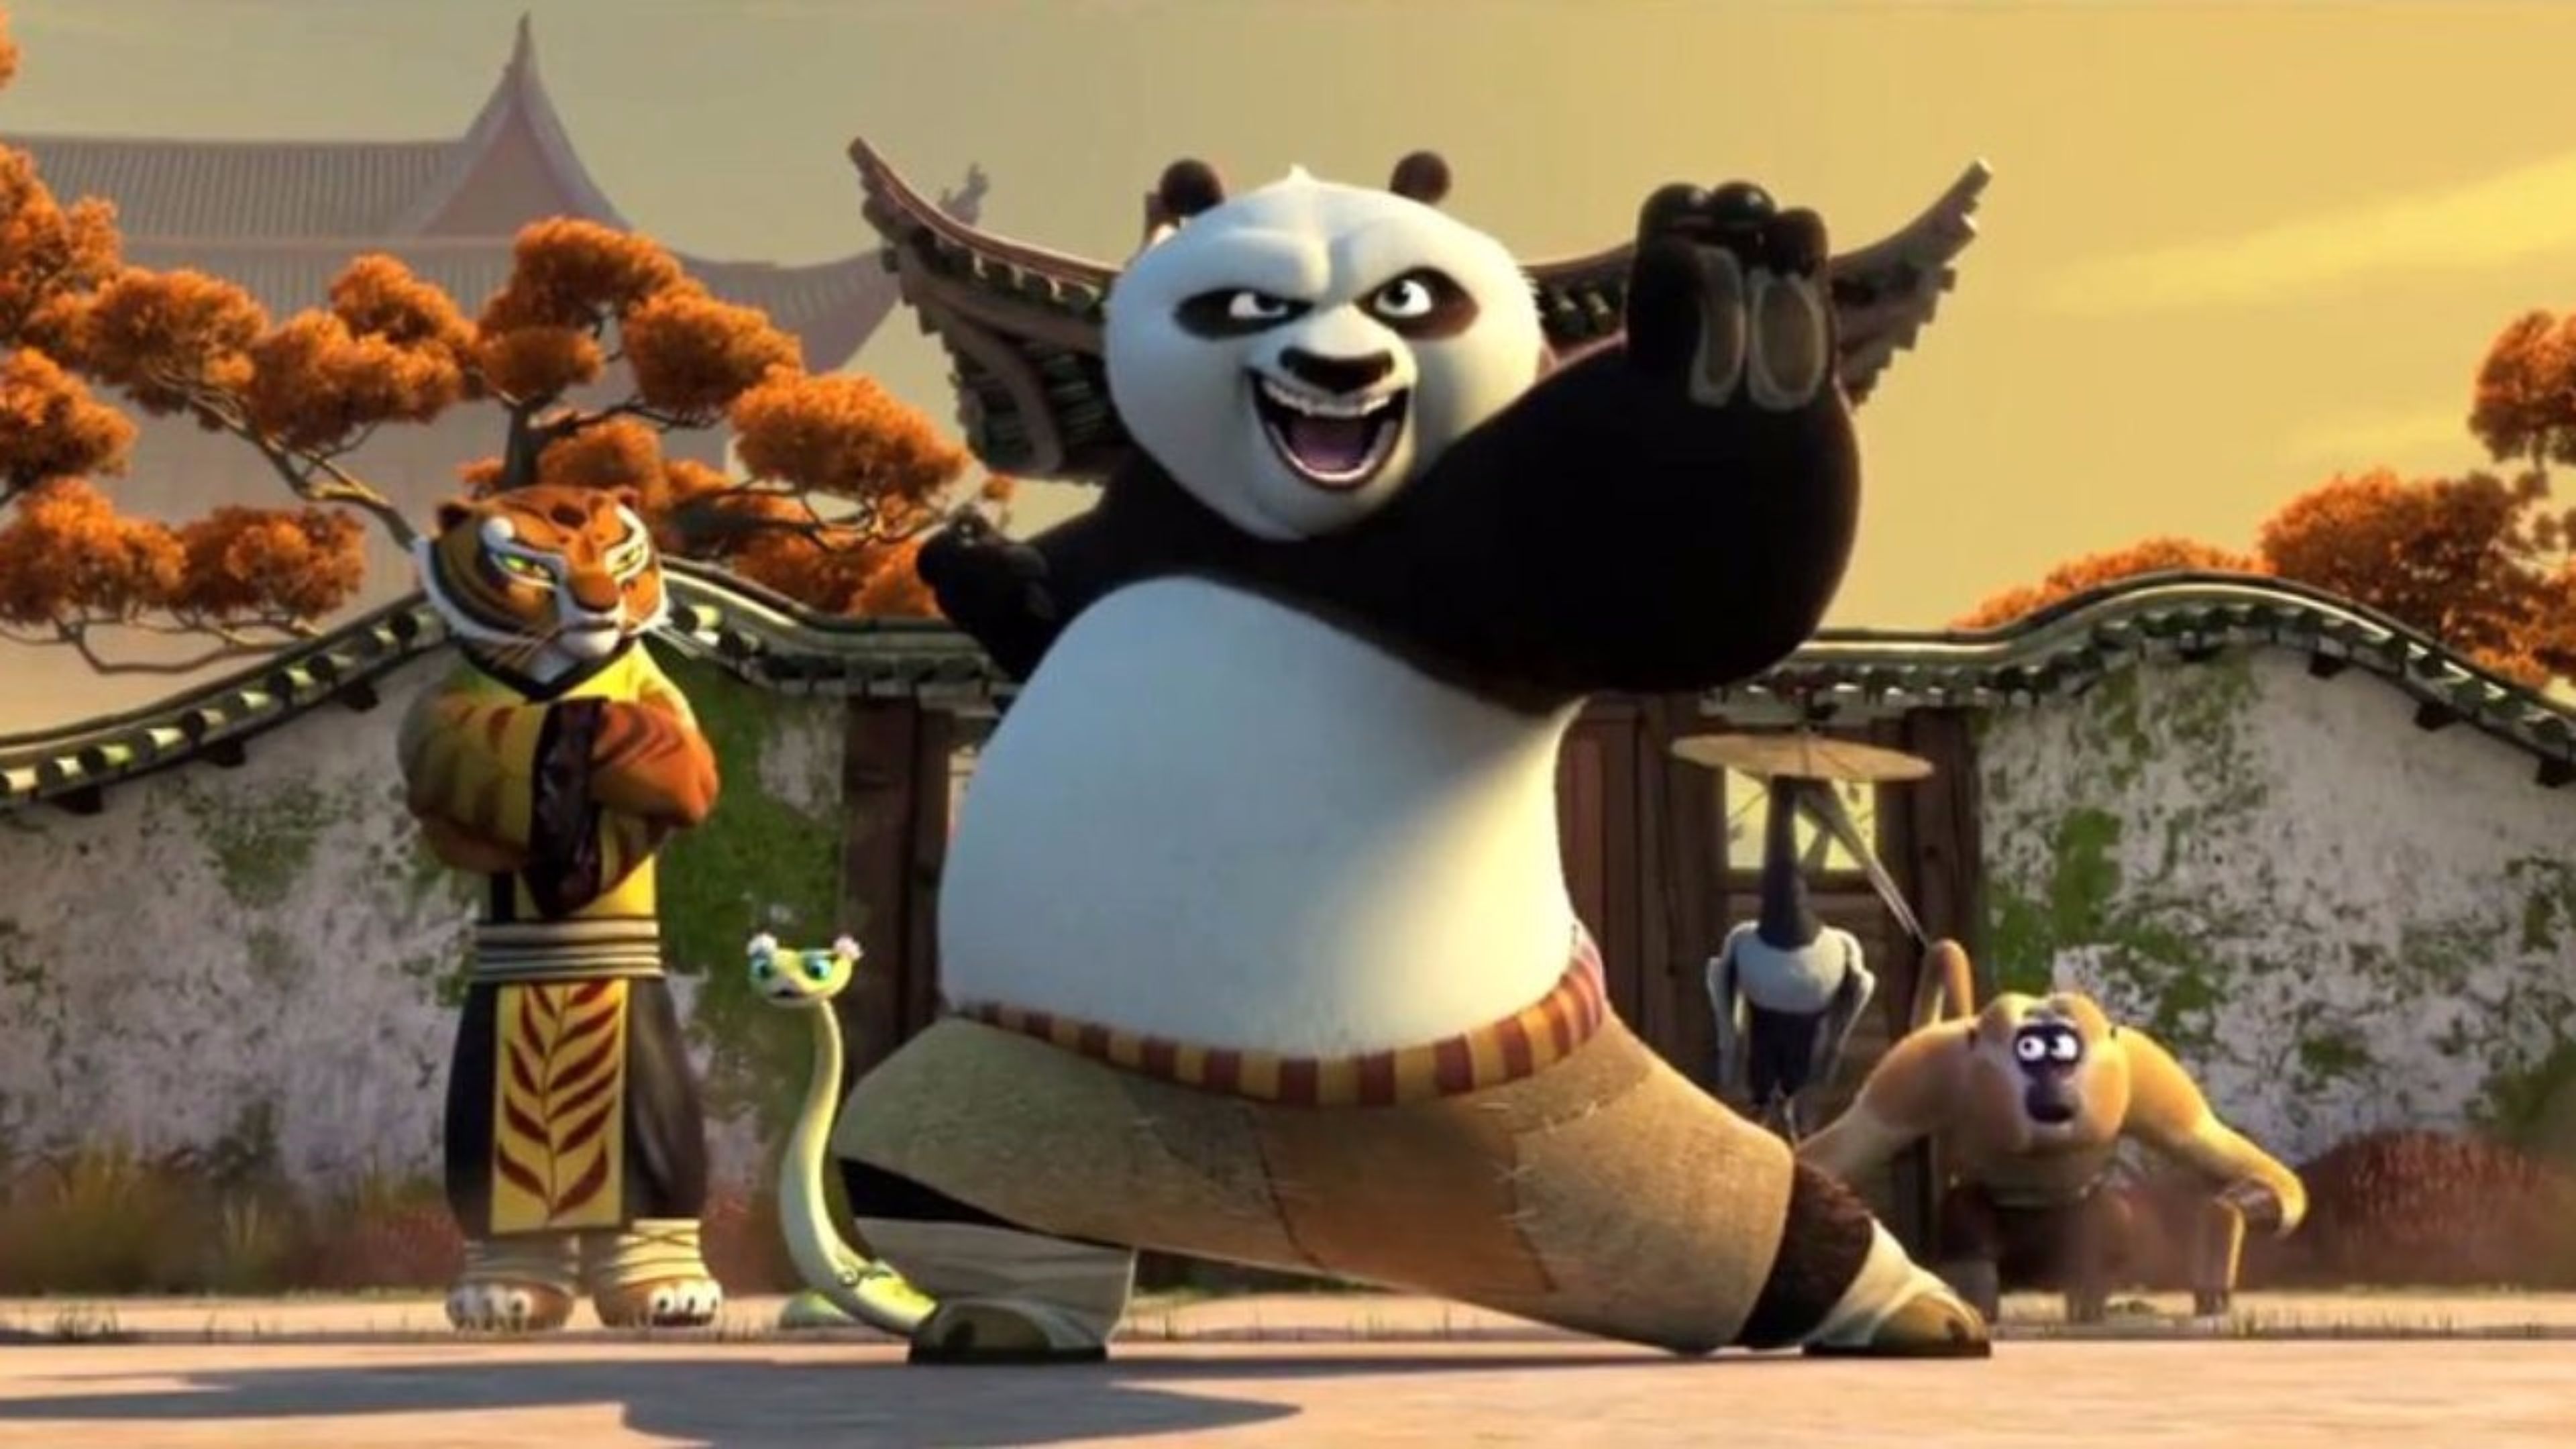 Amazing Kung Fu Panda 3 Movie 4K Wallpaper Free 4K Wallpaper